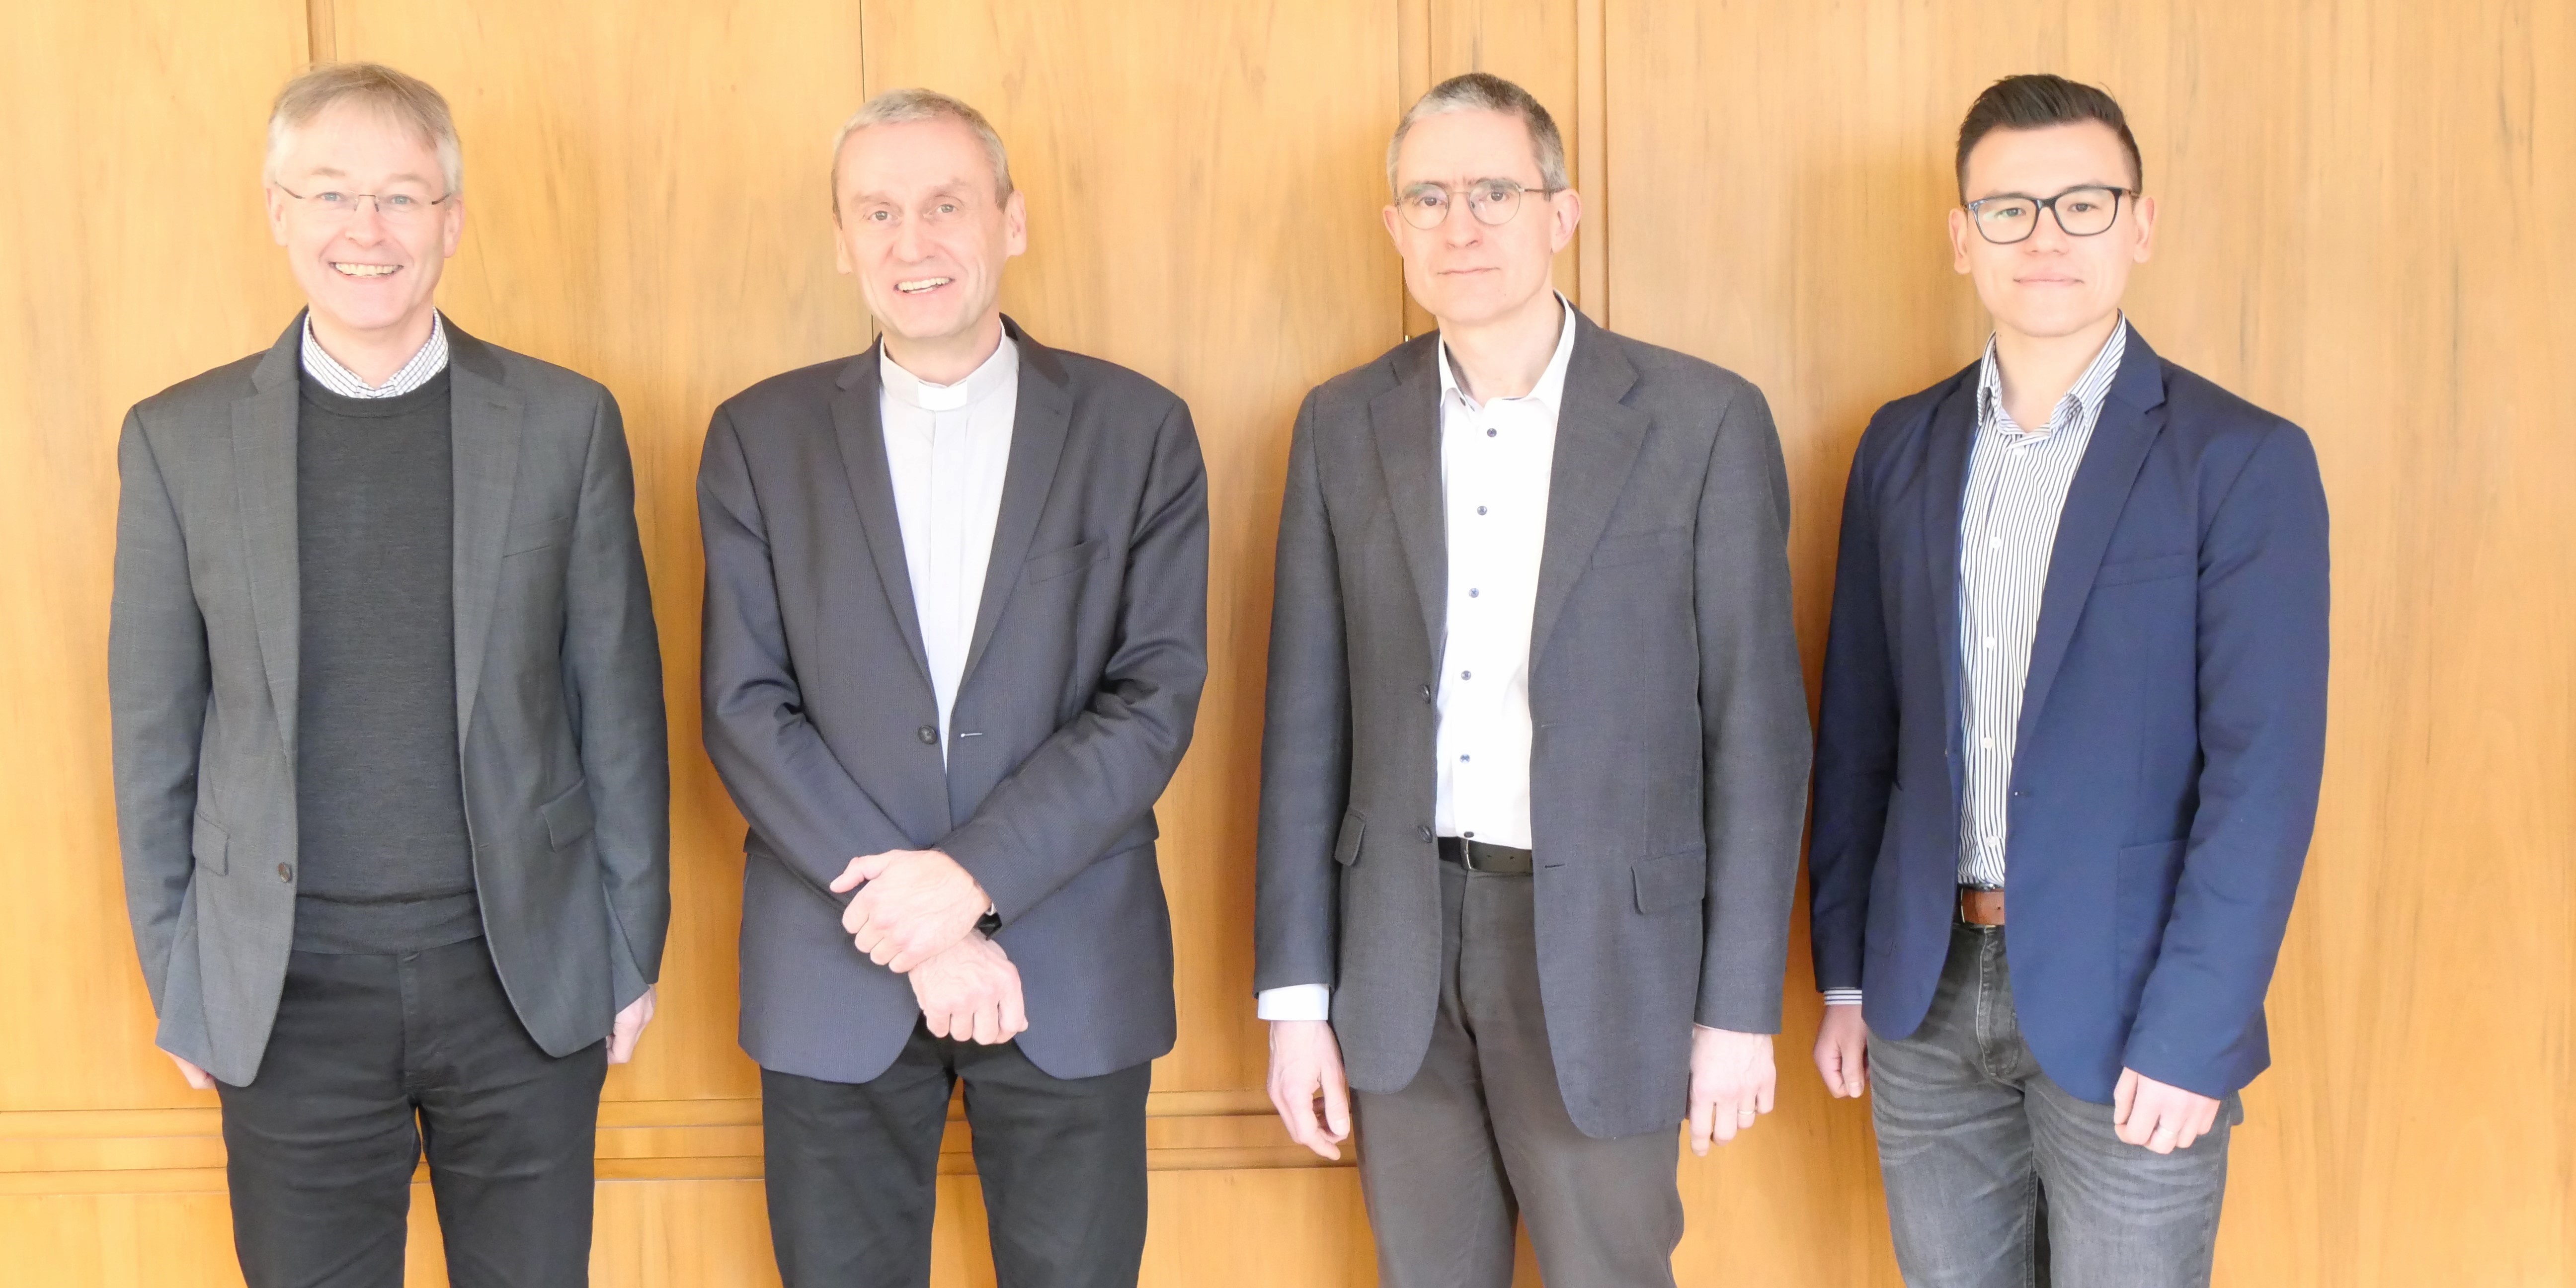 Prof. Dr. Norbert Köster, Prof. Dr. Marcin Worbs, Prof. Dr. Clemens Leonhard und Marco Xu stehend nebeneinander und lächeln in die Kamera